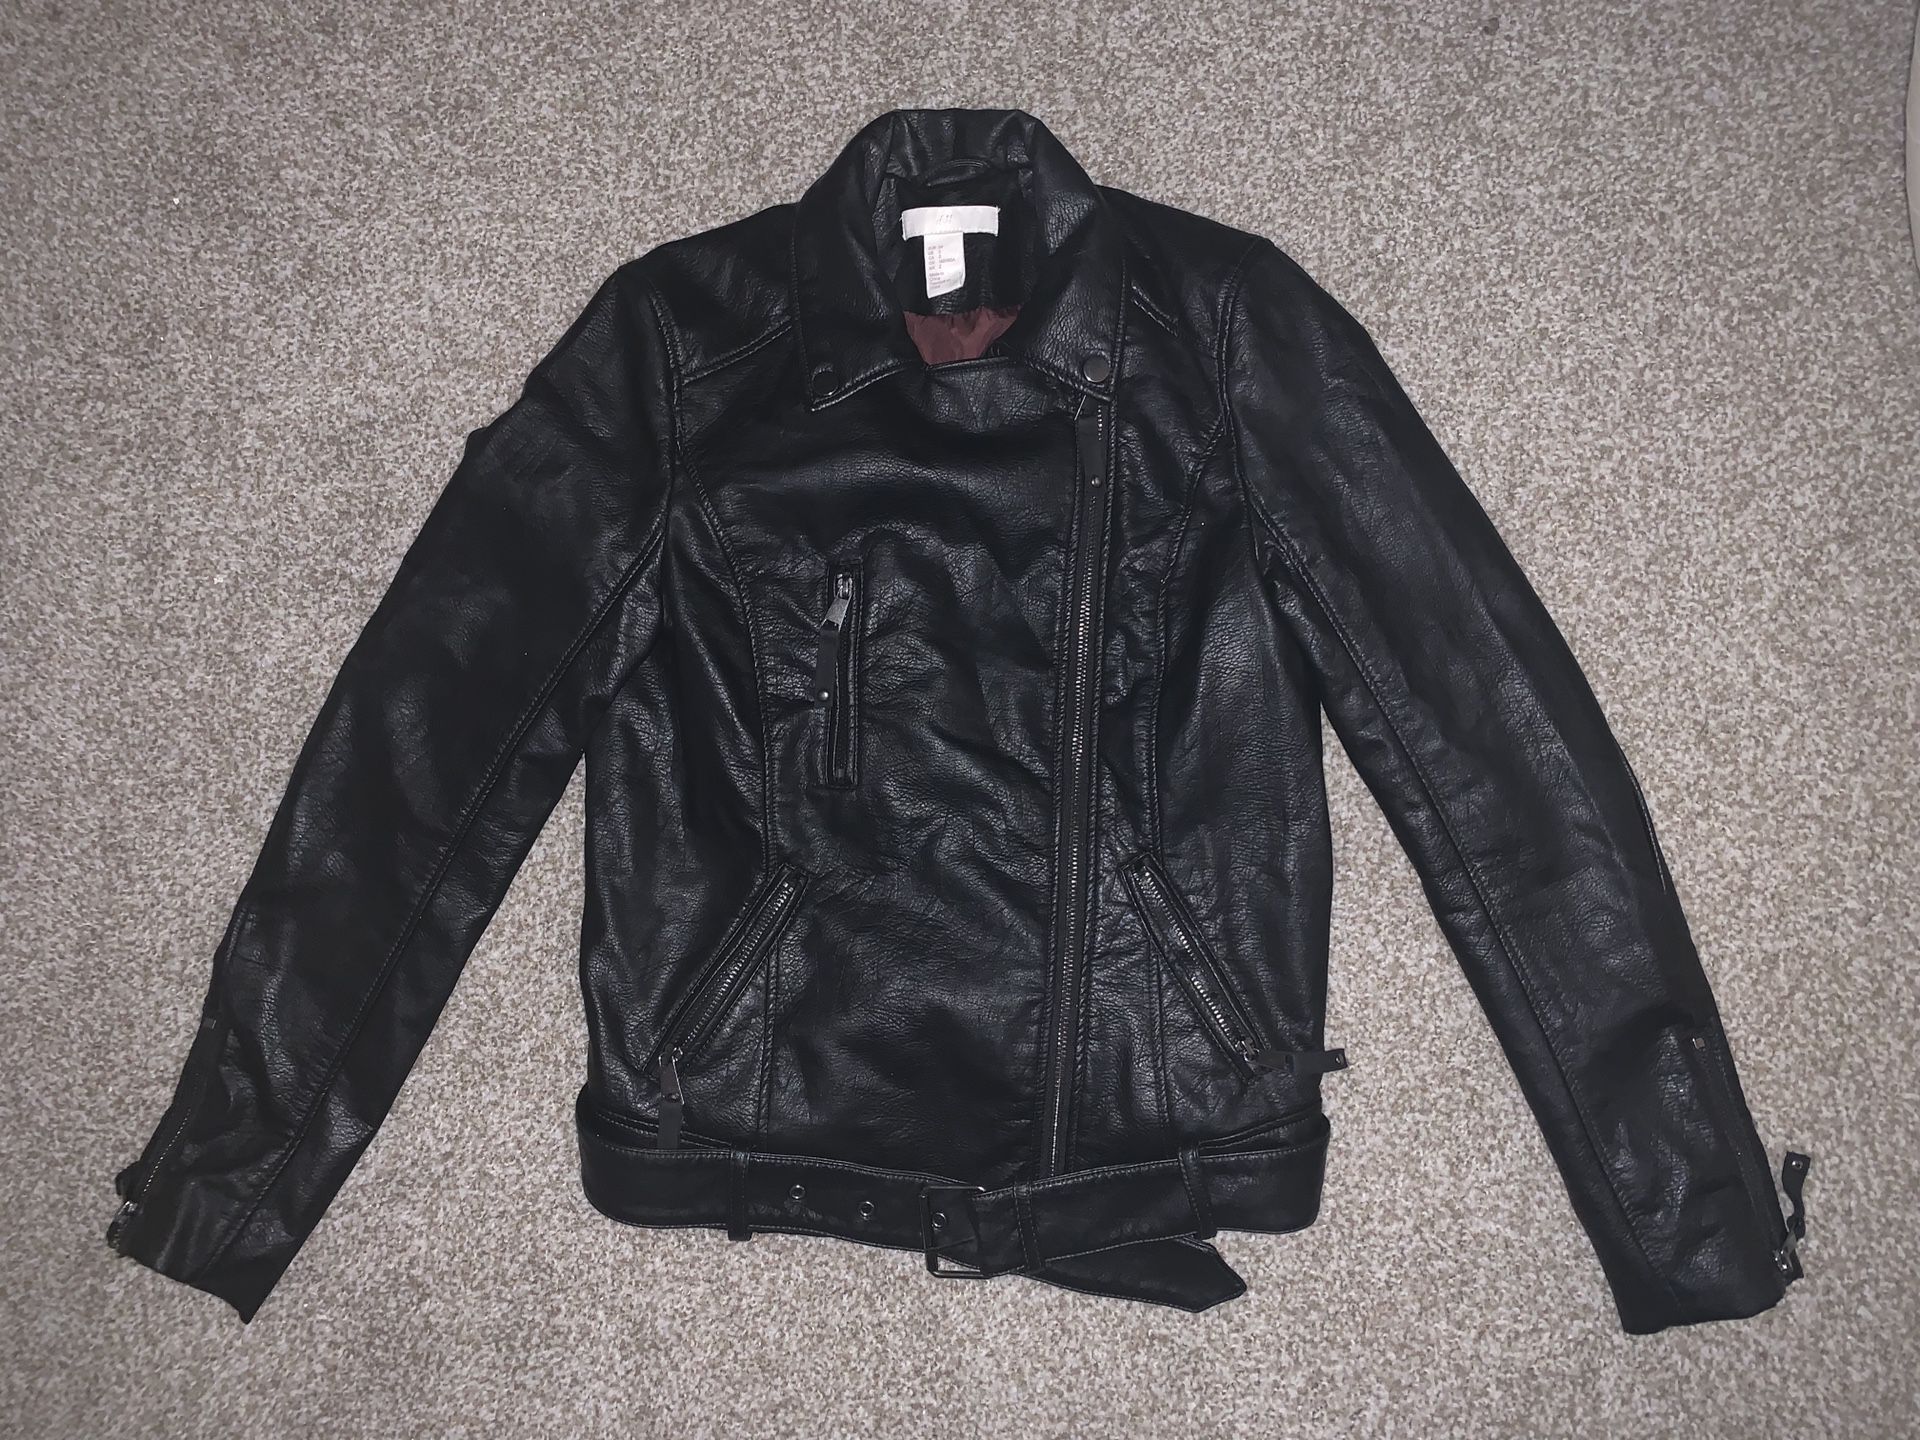 Pleather jacket - size 2